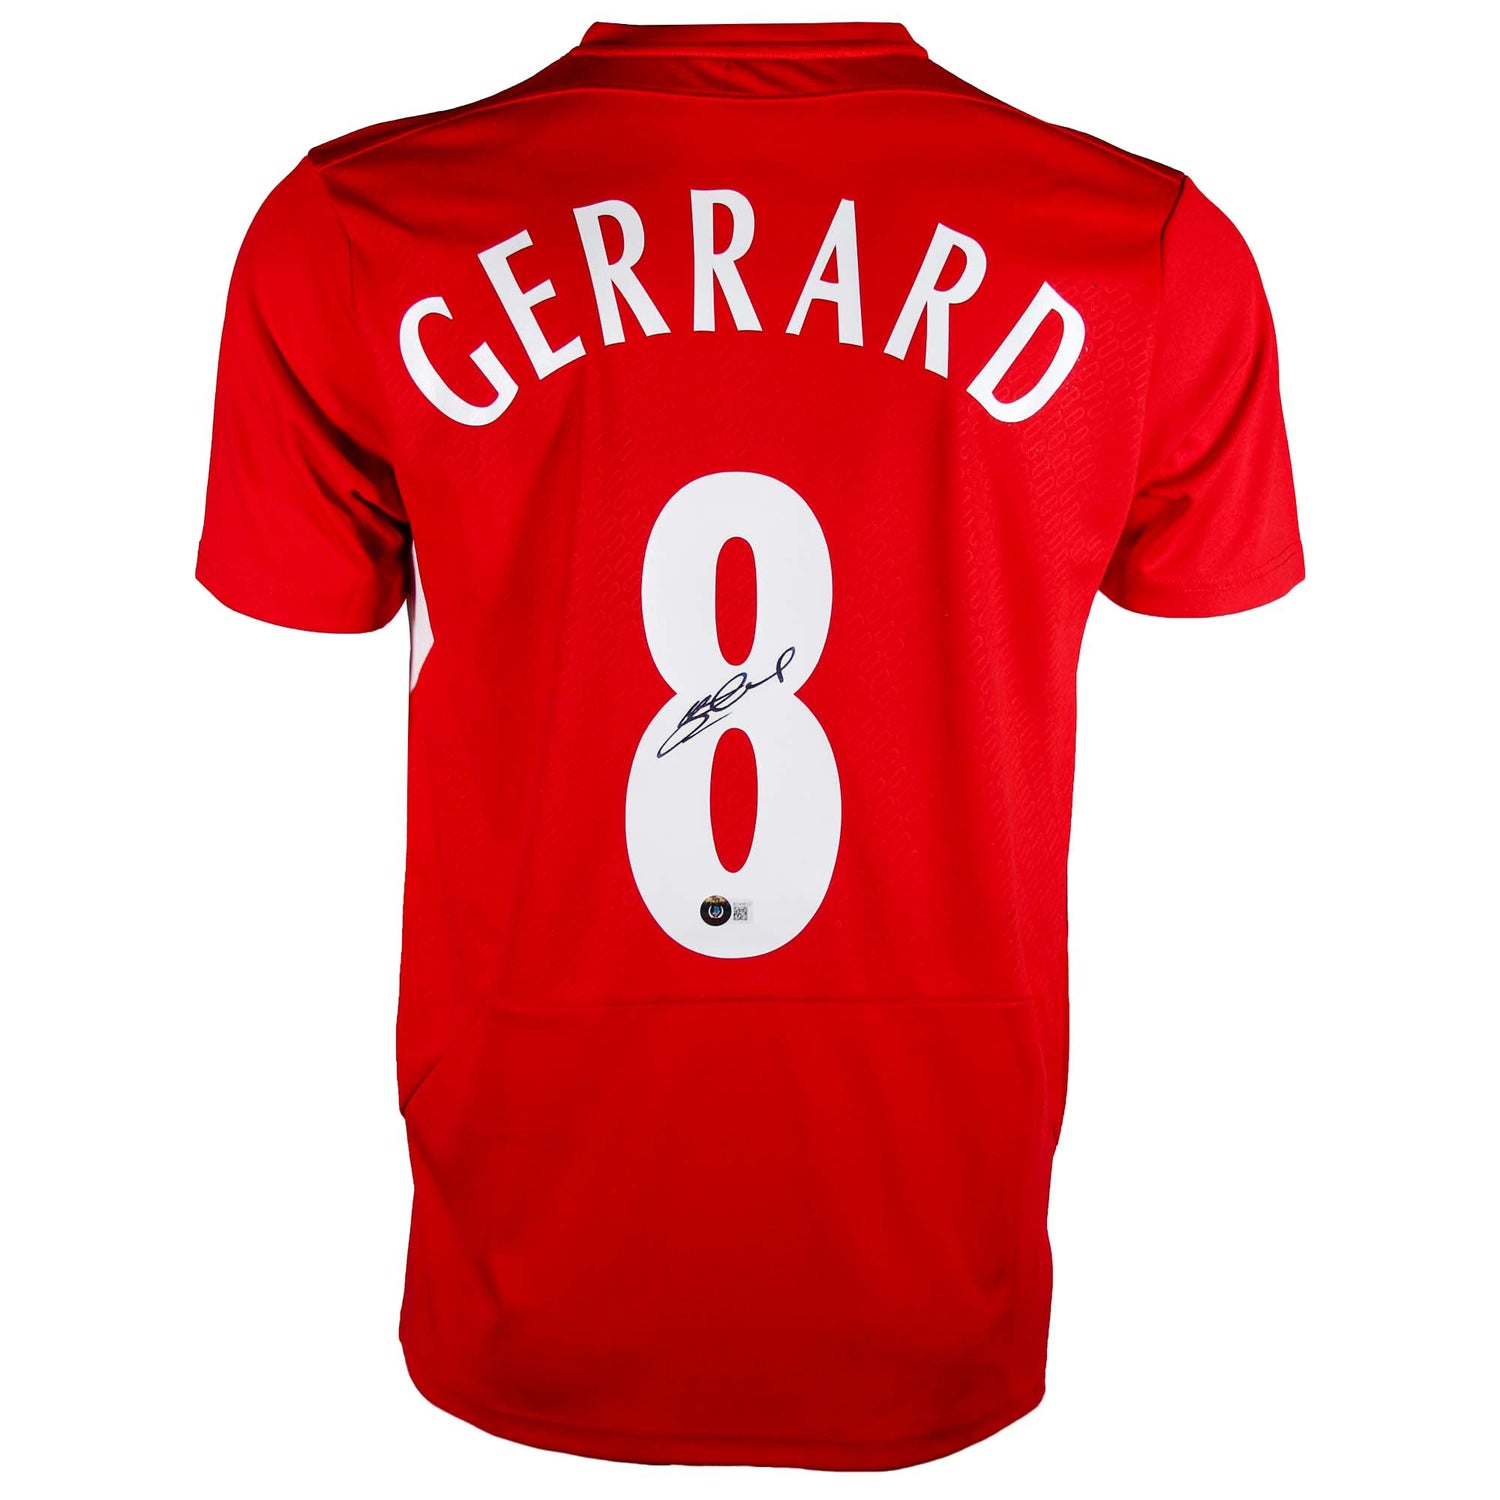 Steven Gerrard Signed Liverpool Jersey Back